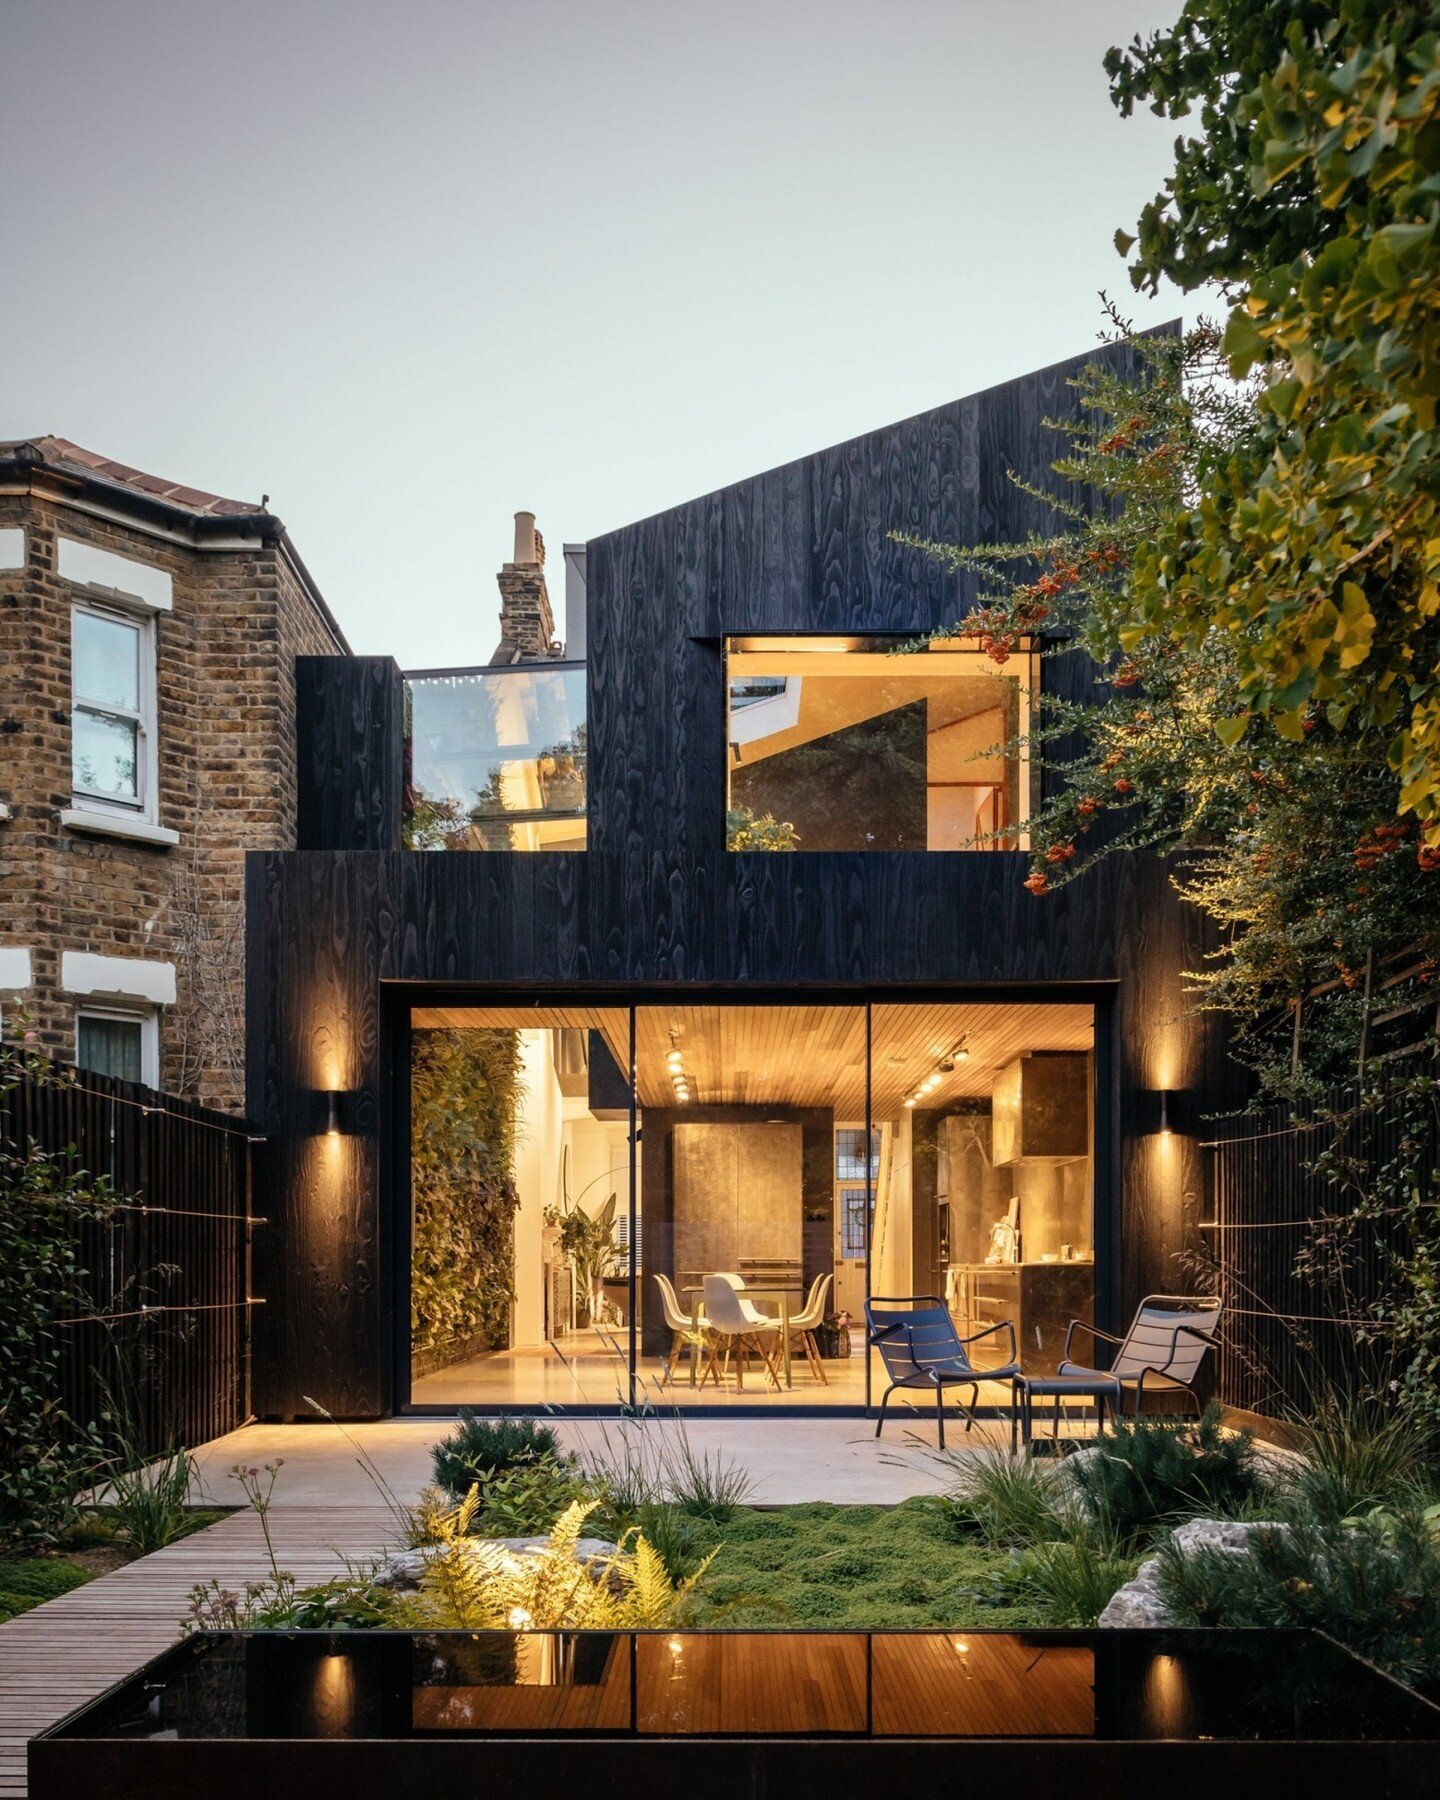 Celebrating the phenomenal work of @neildusheikoarchitects

The House of Elements - Just incredible! 

#architecturelondon #britisharchitecture #amazingarchitecture #housesofinstagram